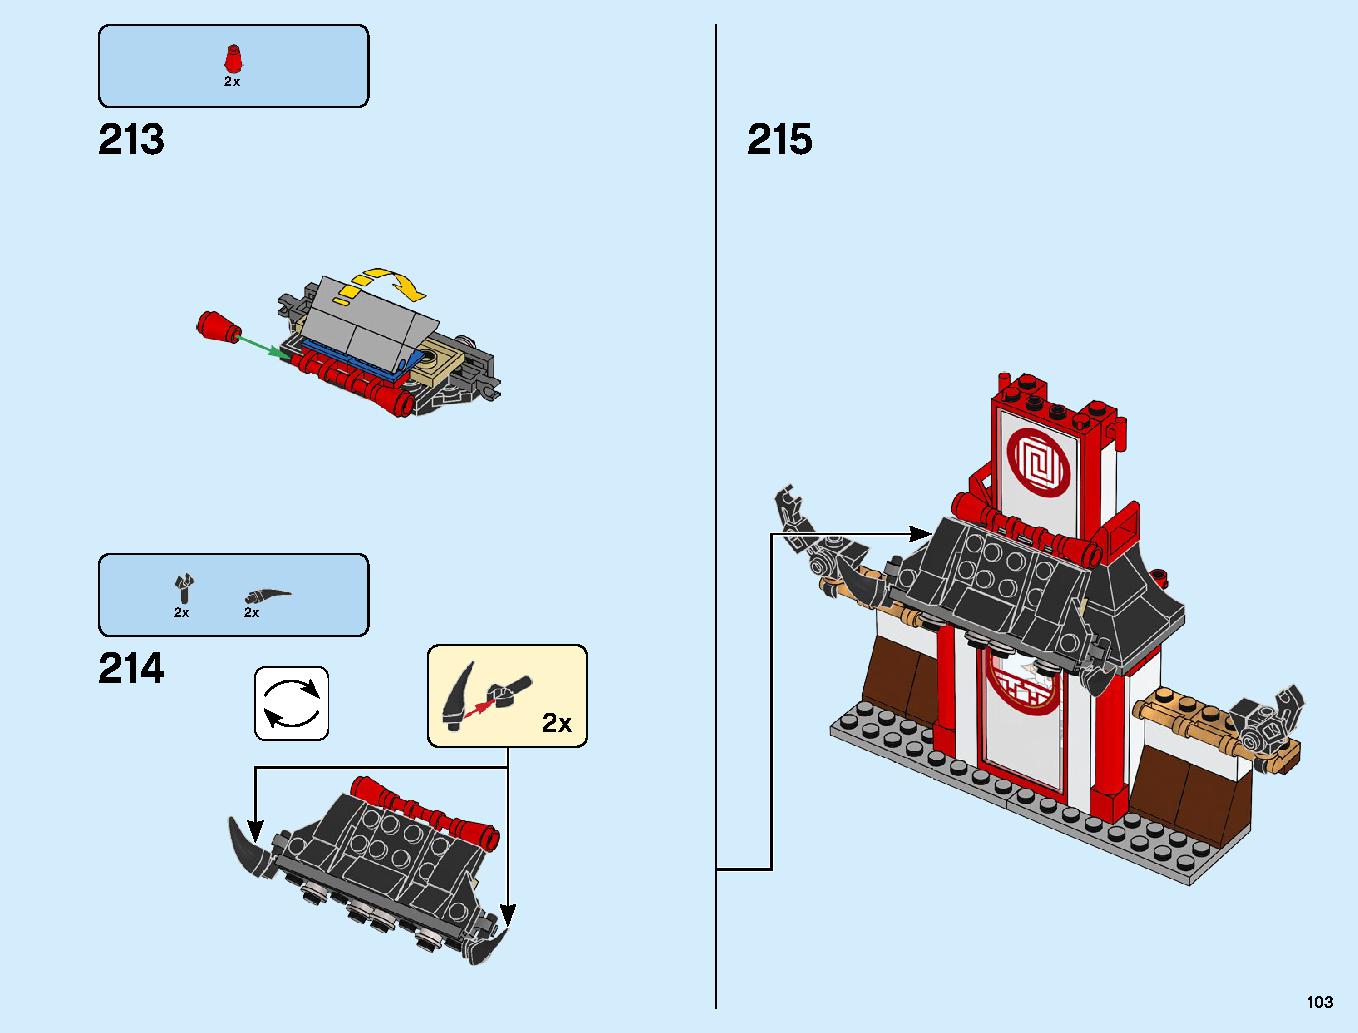 ニンジャ道場 70670 レゴの商品情報 レゴの説明書・組立方法 103 page